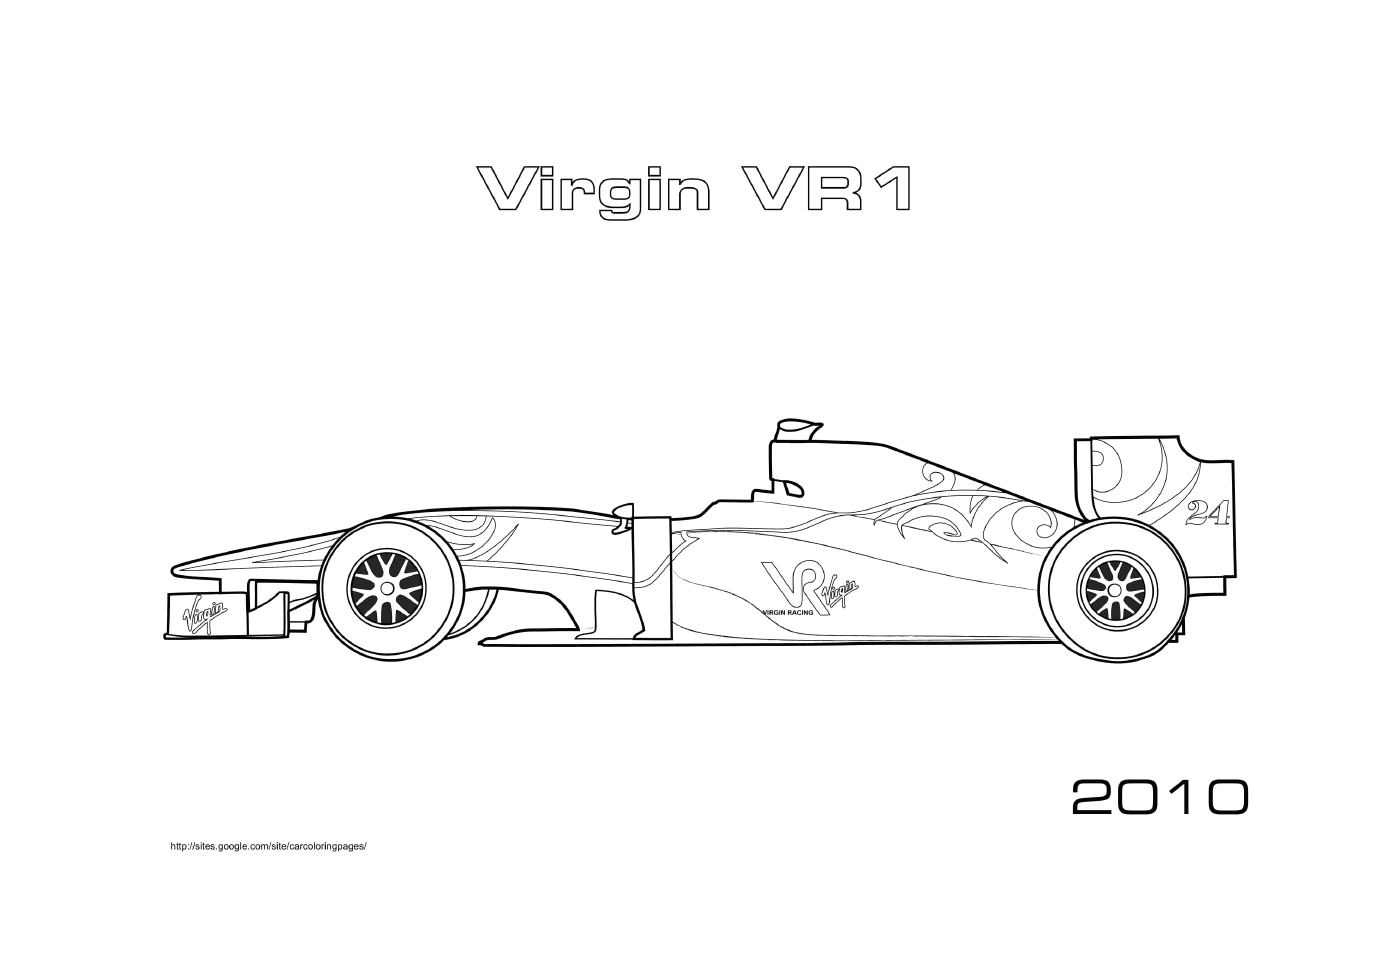 F1 Virgin Vr1 2010